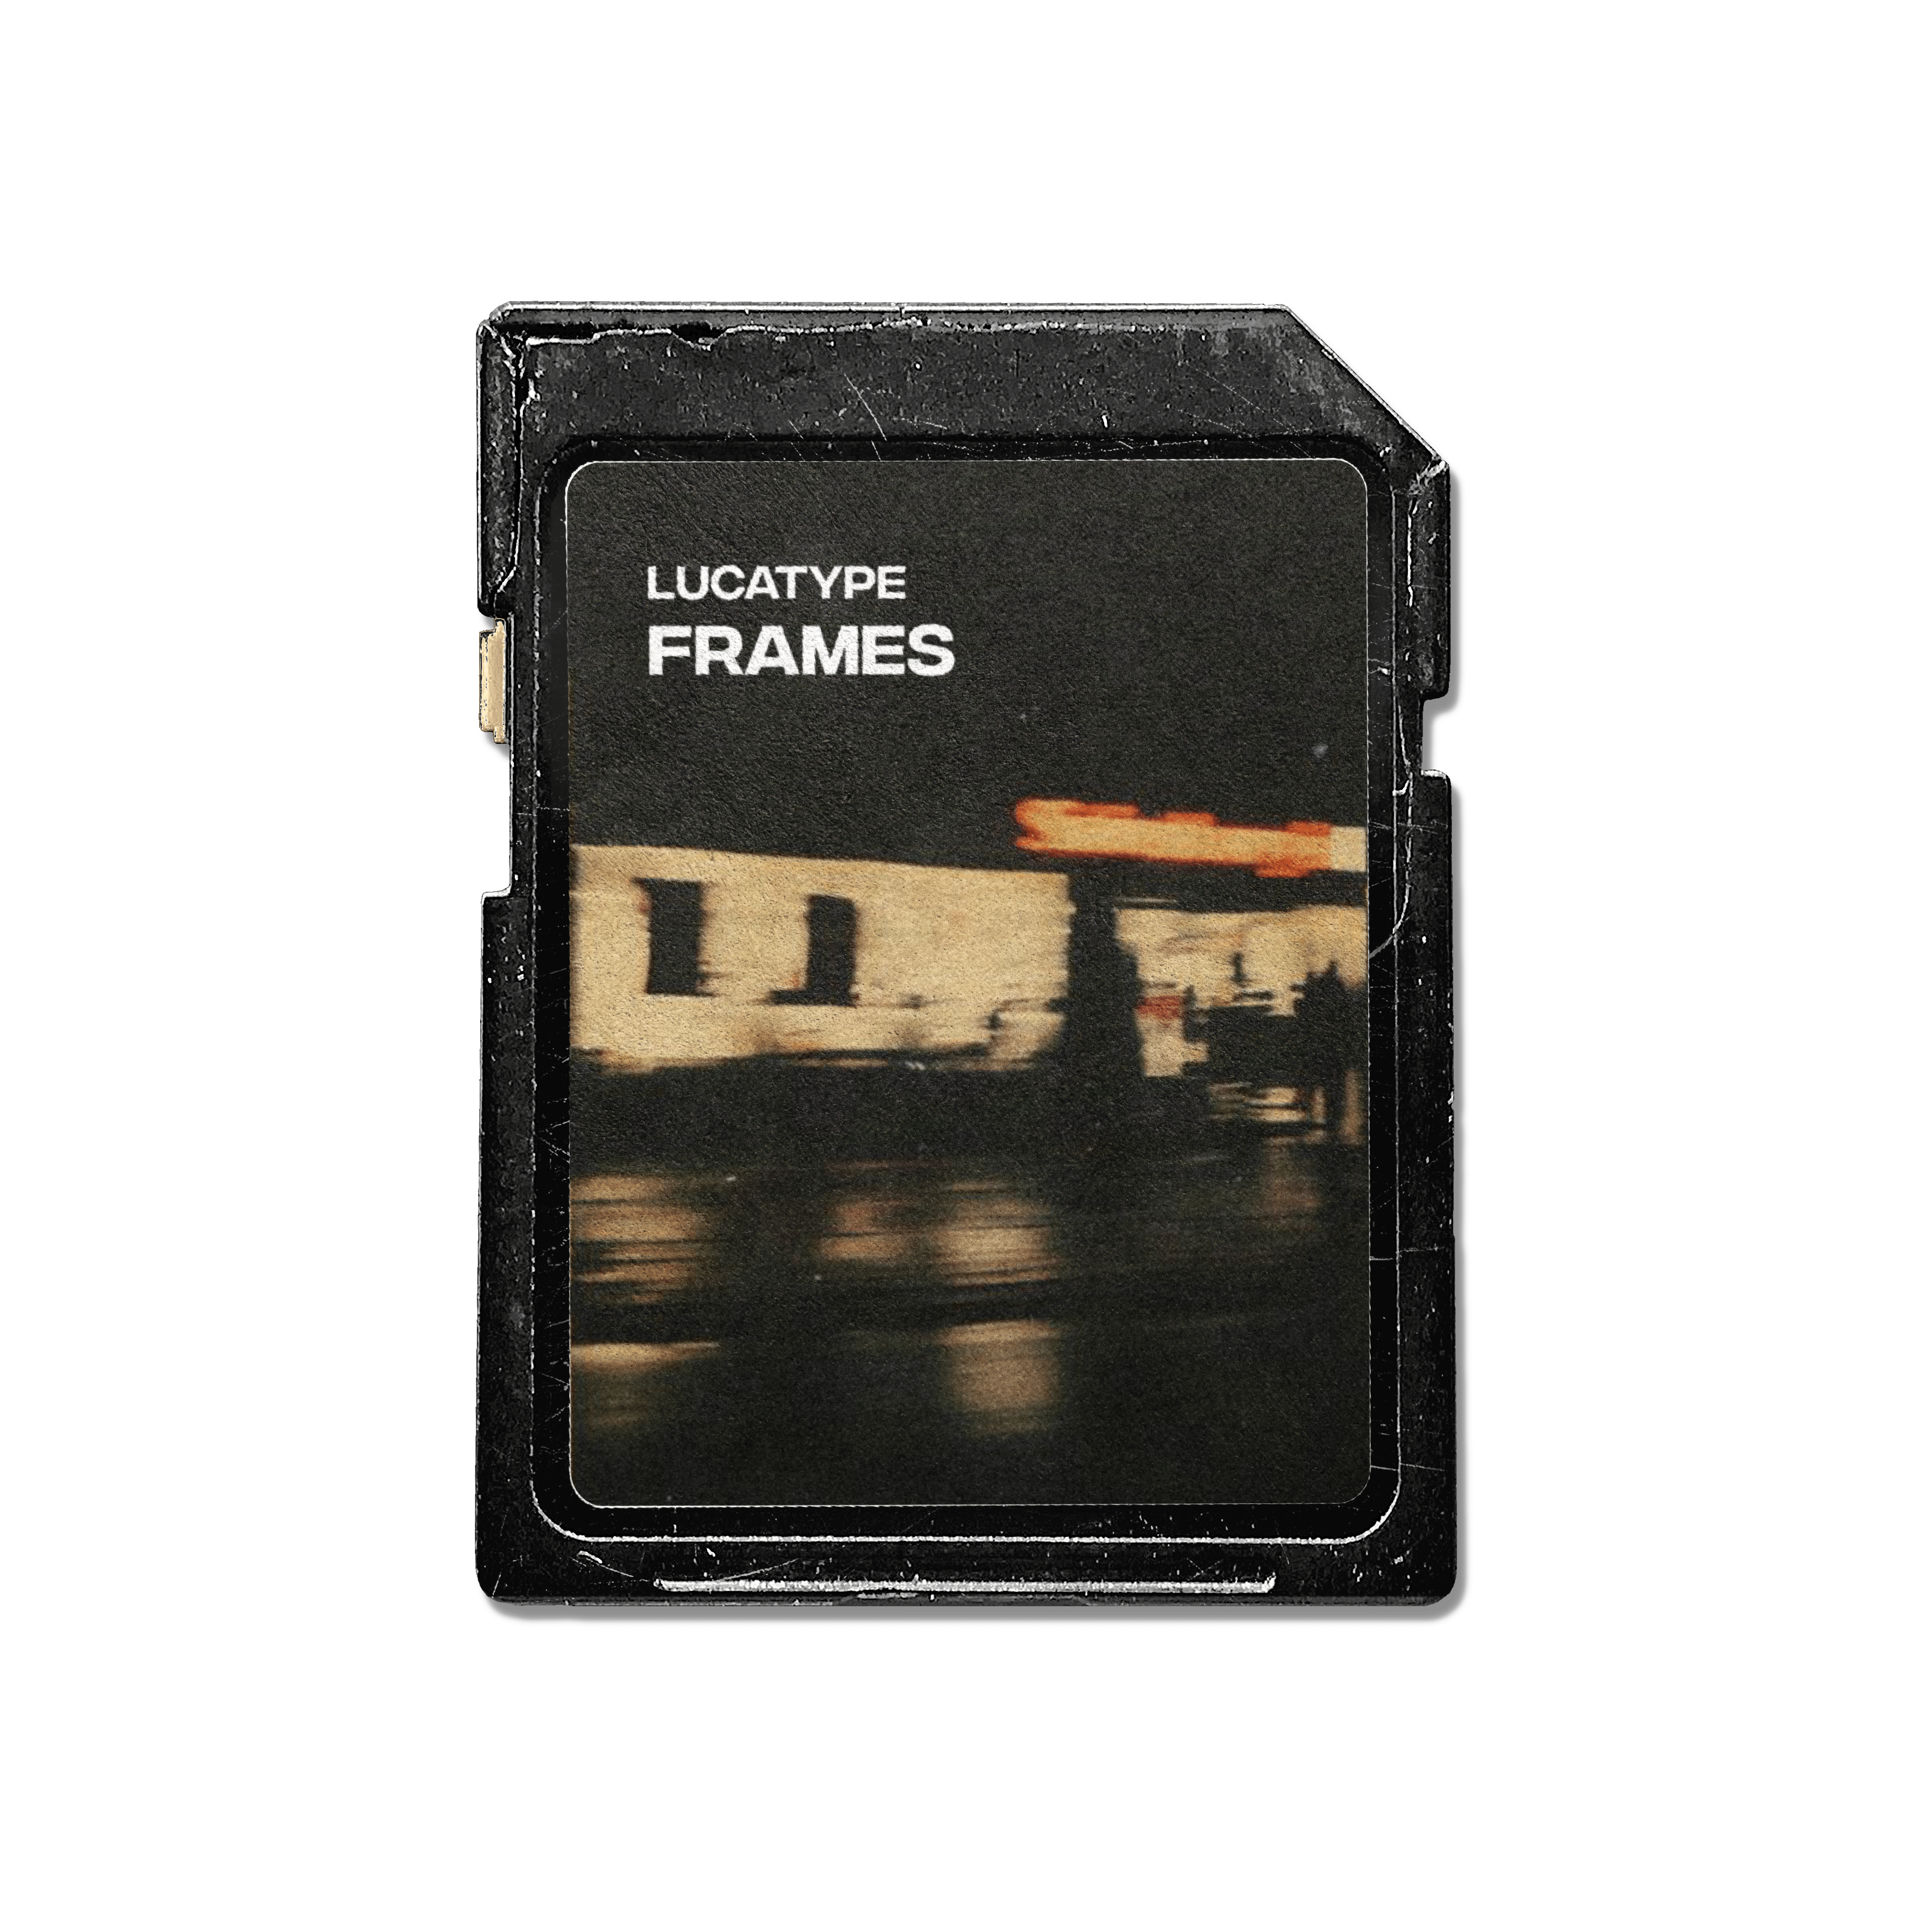 frames - lucatype Drum Kit